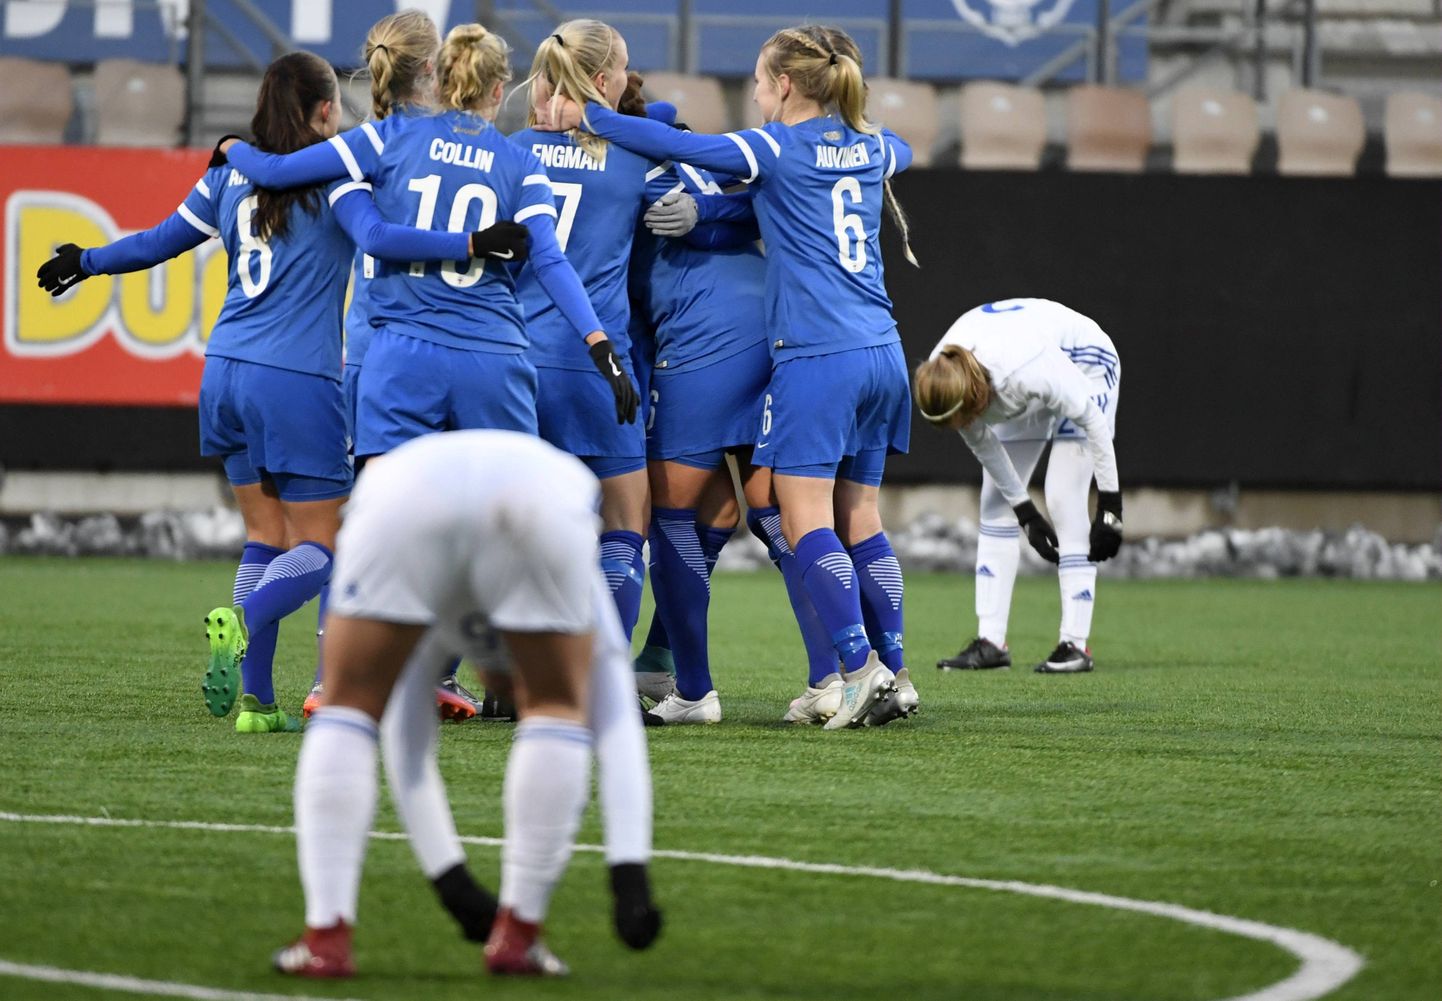 Soome jalgpalli naisteliiga nimes enam sugu ei nimetata. Huvitav kuidas hakkavad soomlased tulevikus kutsuma Soome naiste rahvuskoondist (pildil).